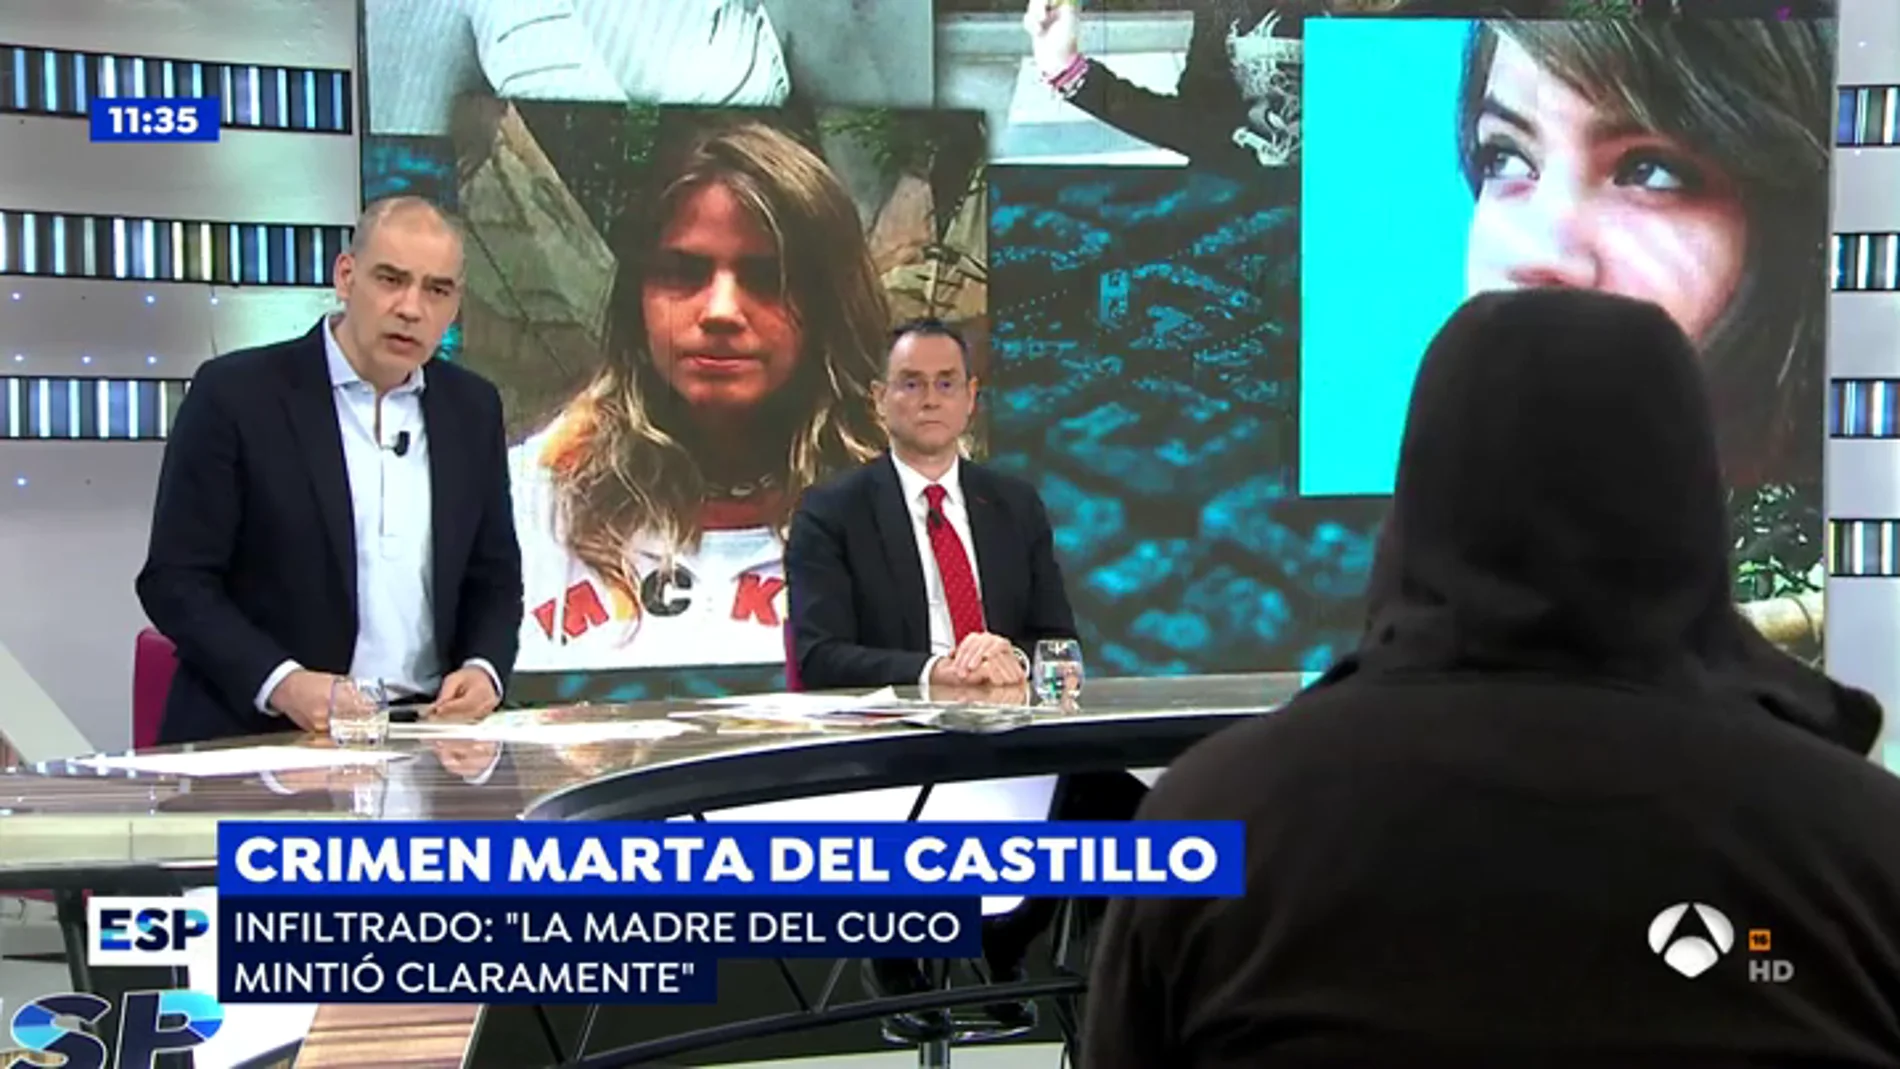 El infiltrado por el crimen de Marta del Castillo.